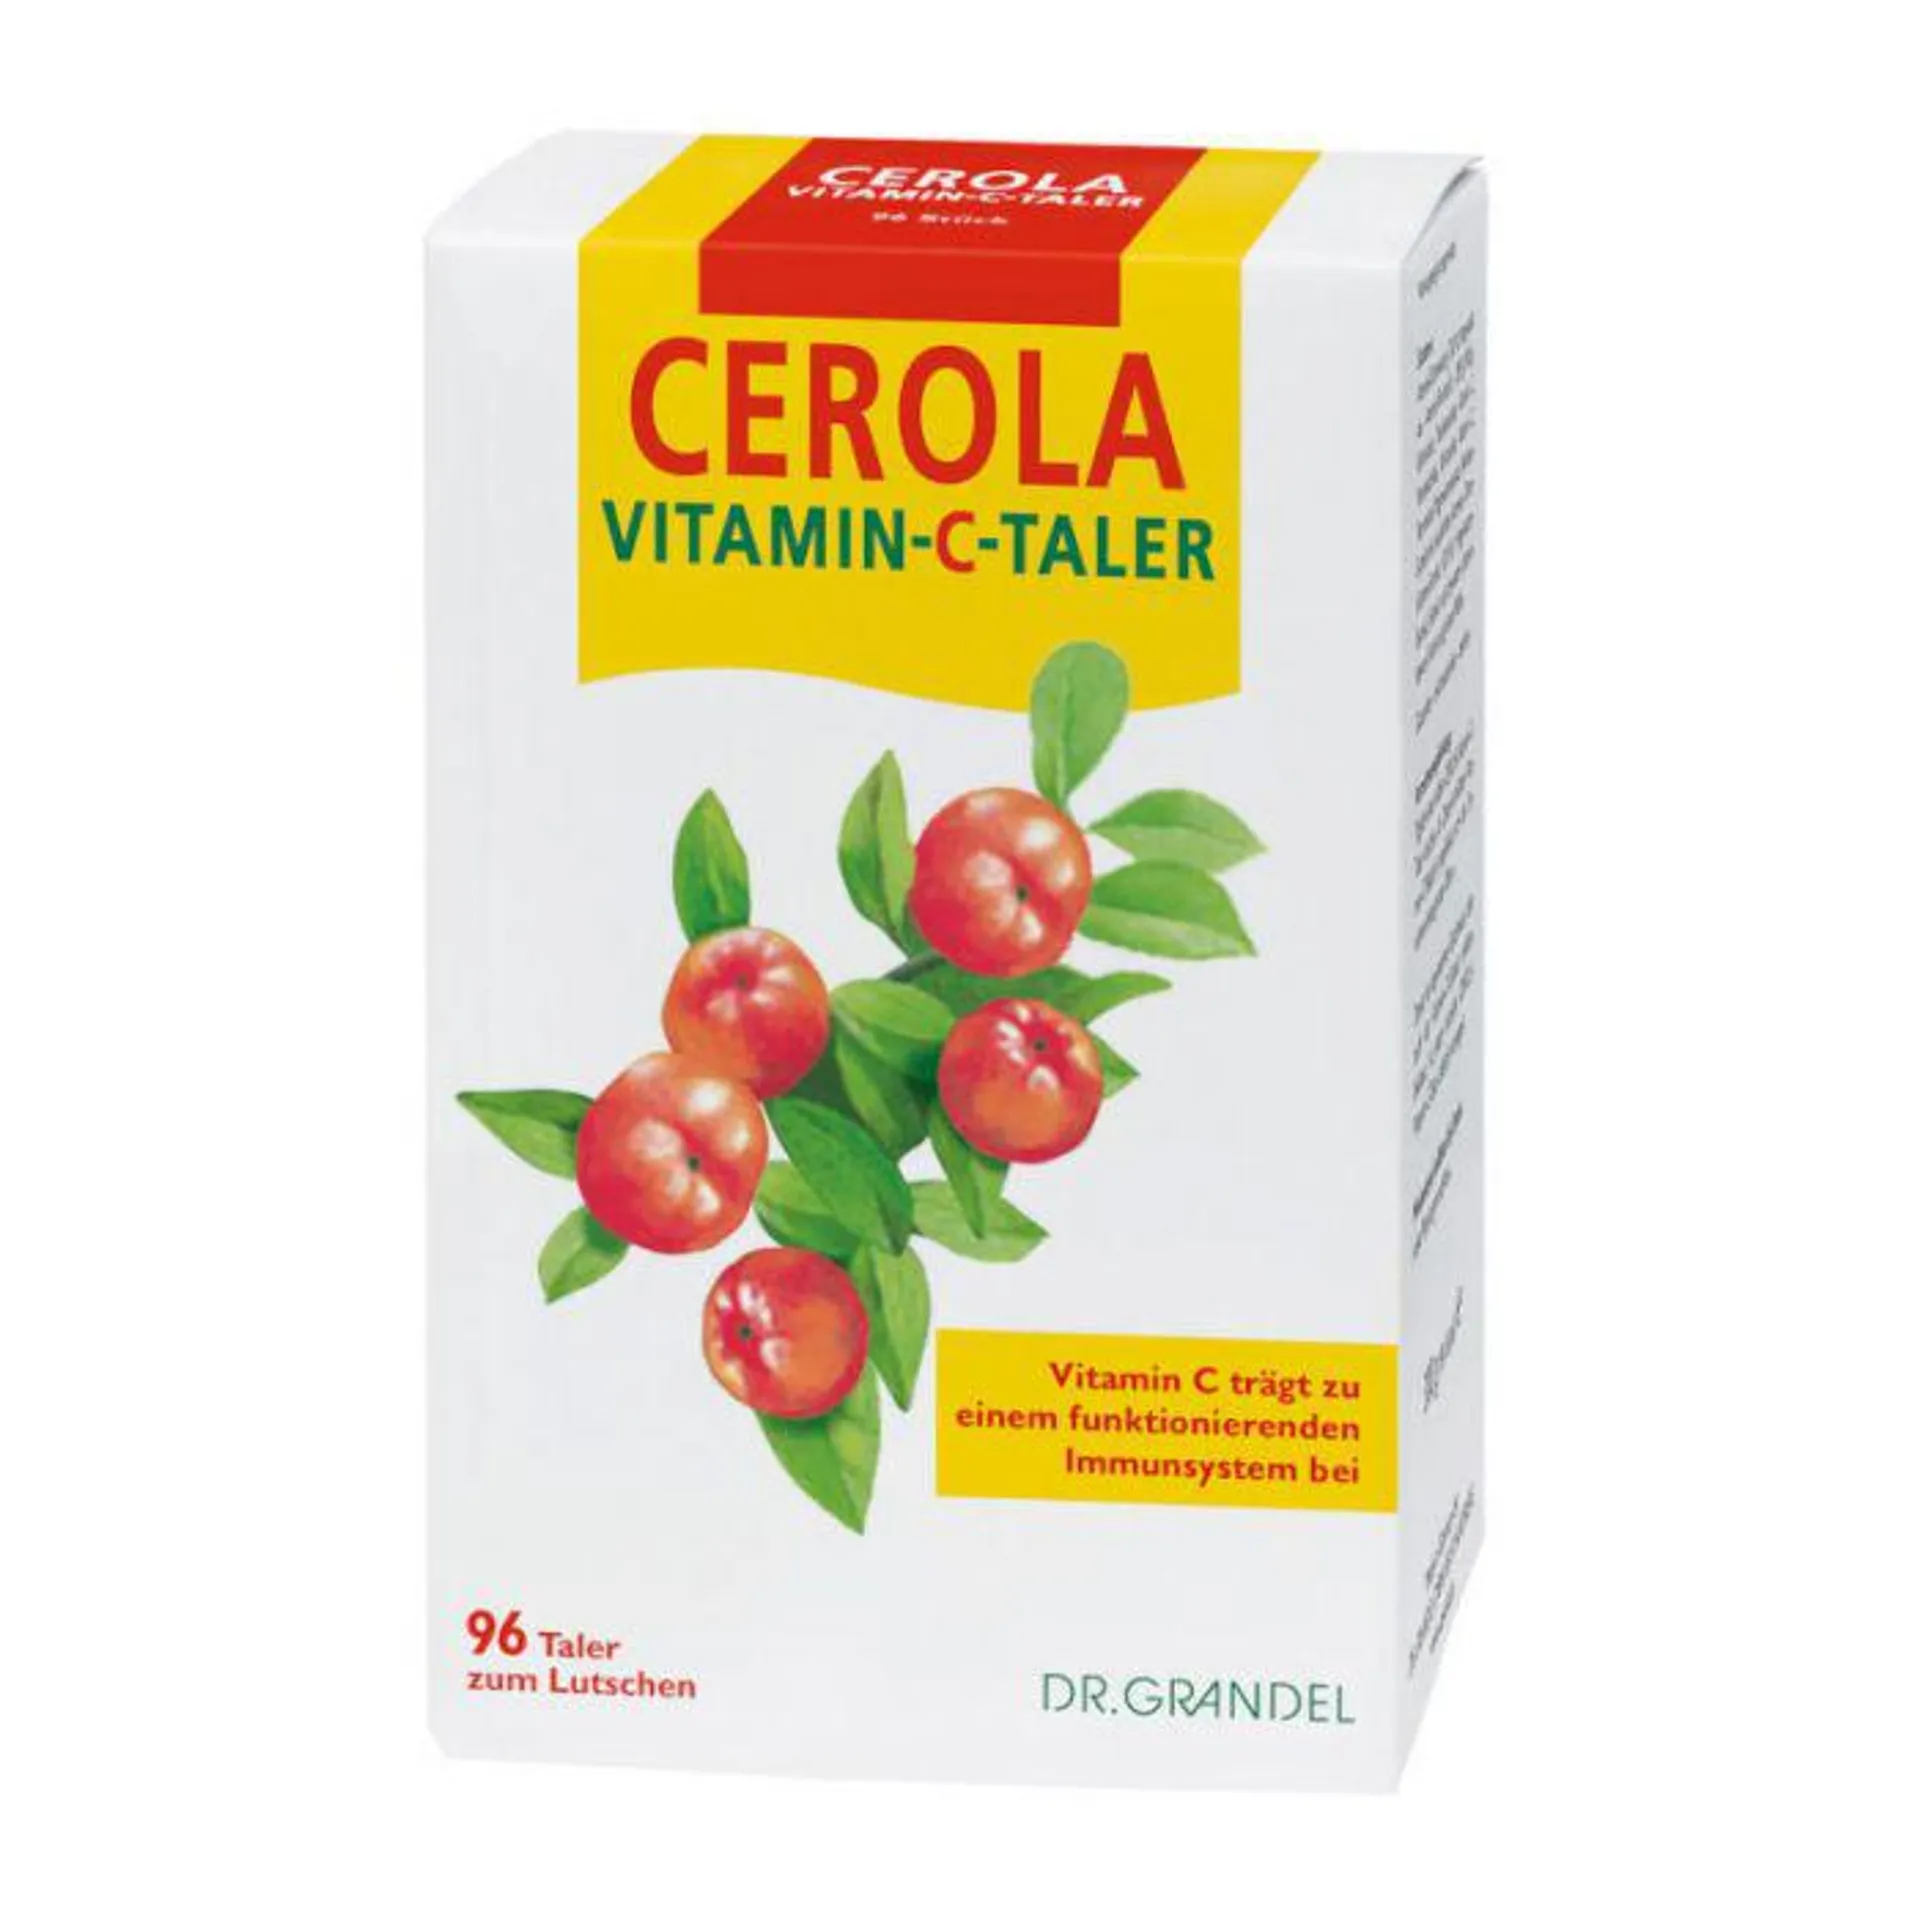 Dr. Grandel Cerola Vitamin-C-Taler 96 Stk